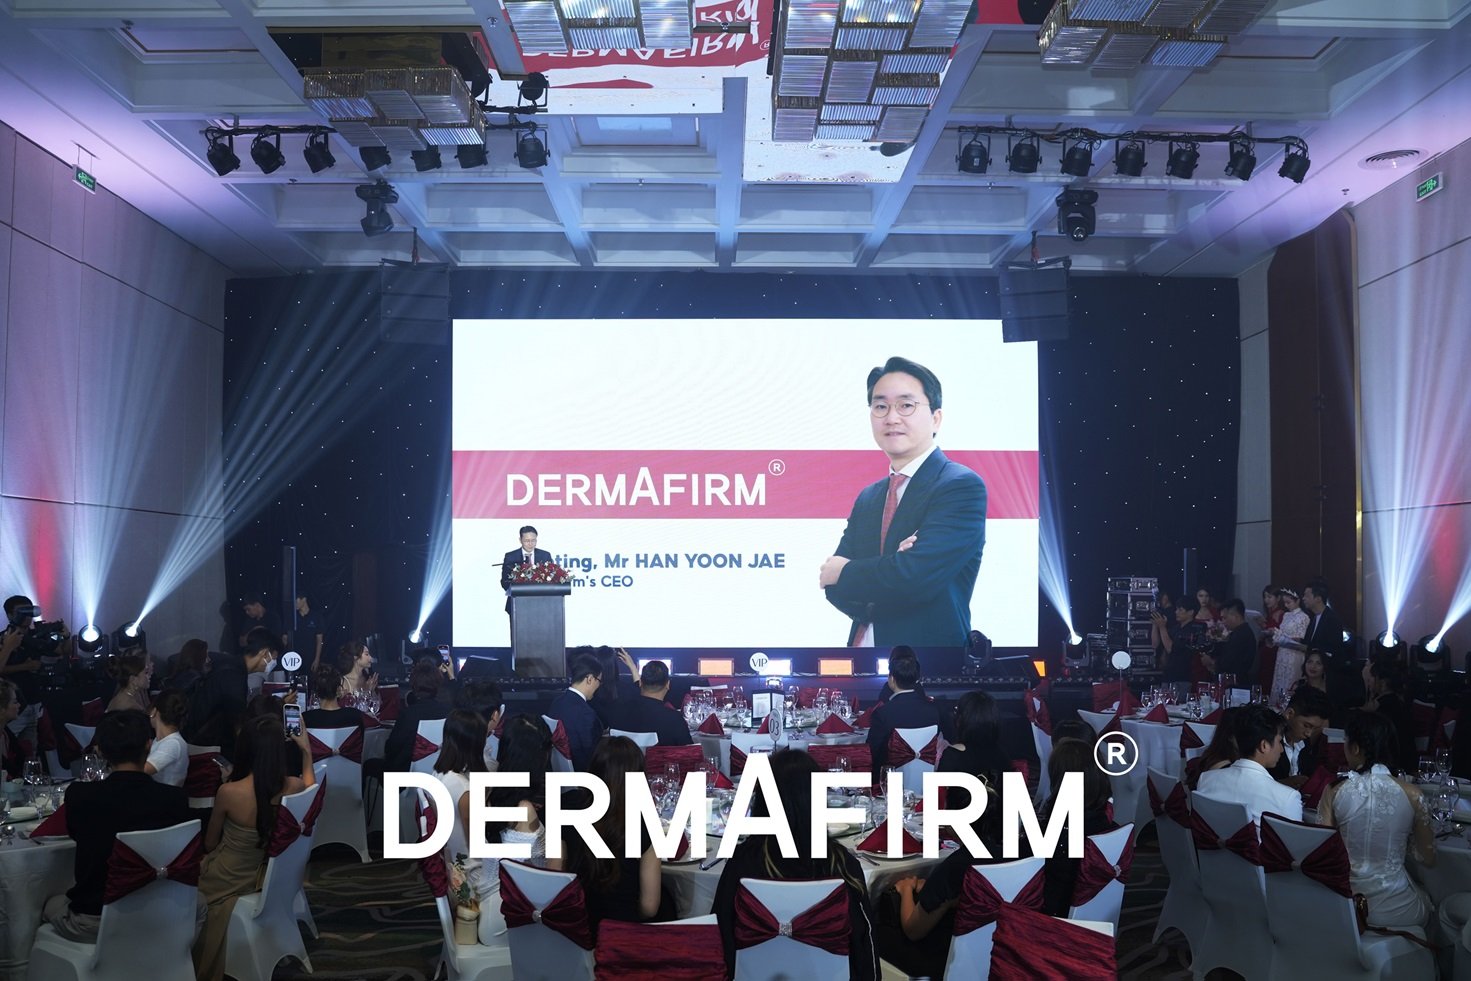 Thương hiệu mỹ phẩm Dermafirm ra mắt dòng sản phẩm 'Cica AC Line' tại Việt Nam - Ảnh 1.